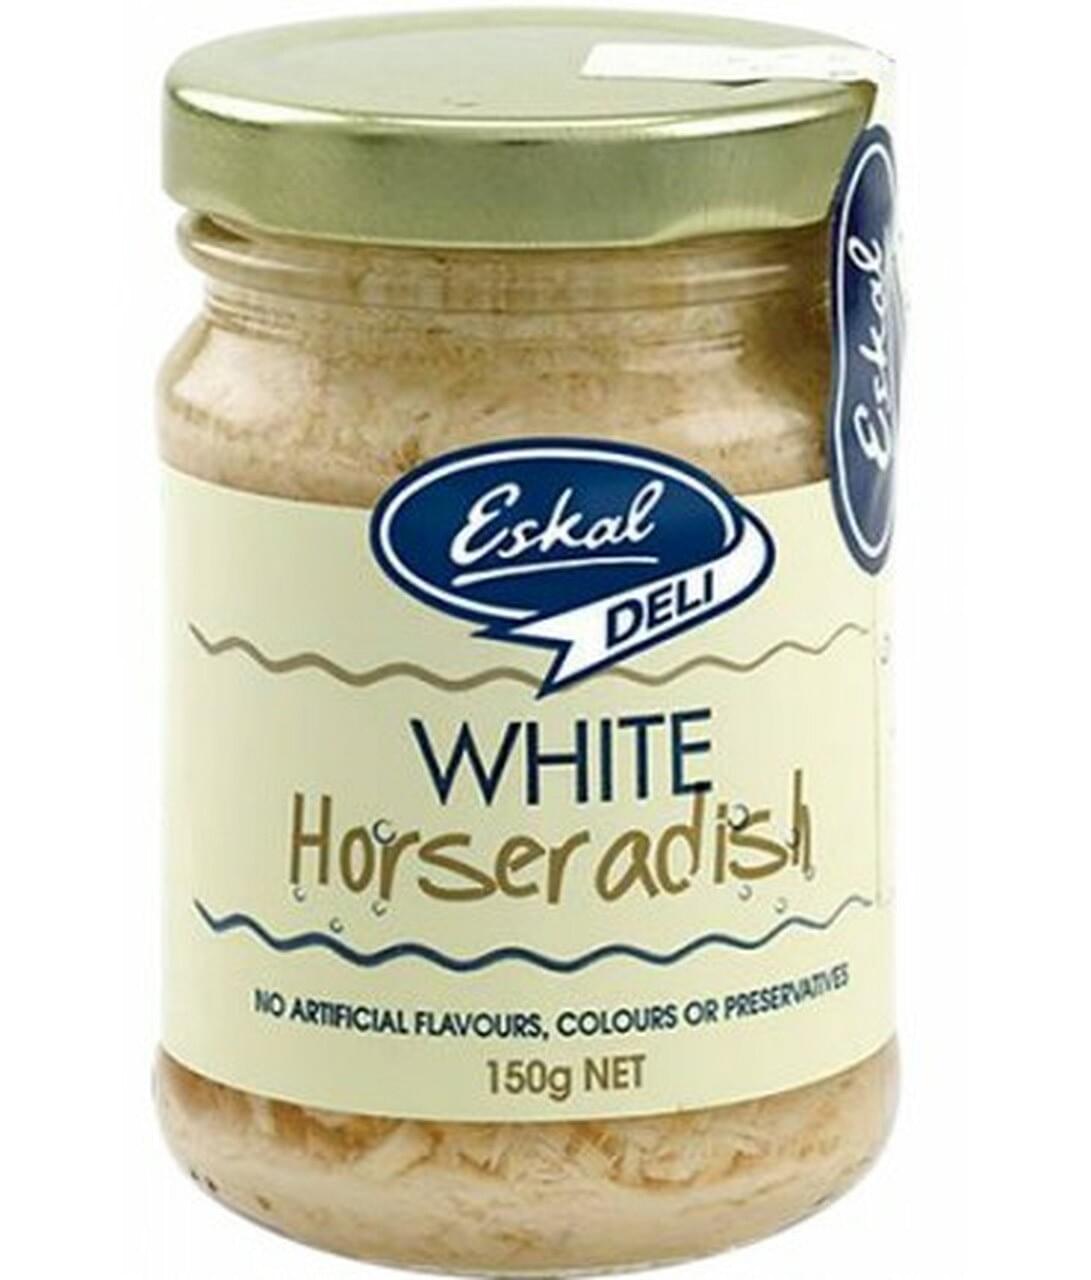 Eskal Horseradish Red Or White 150Gm